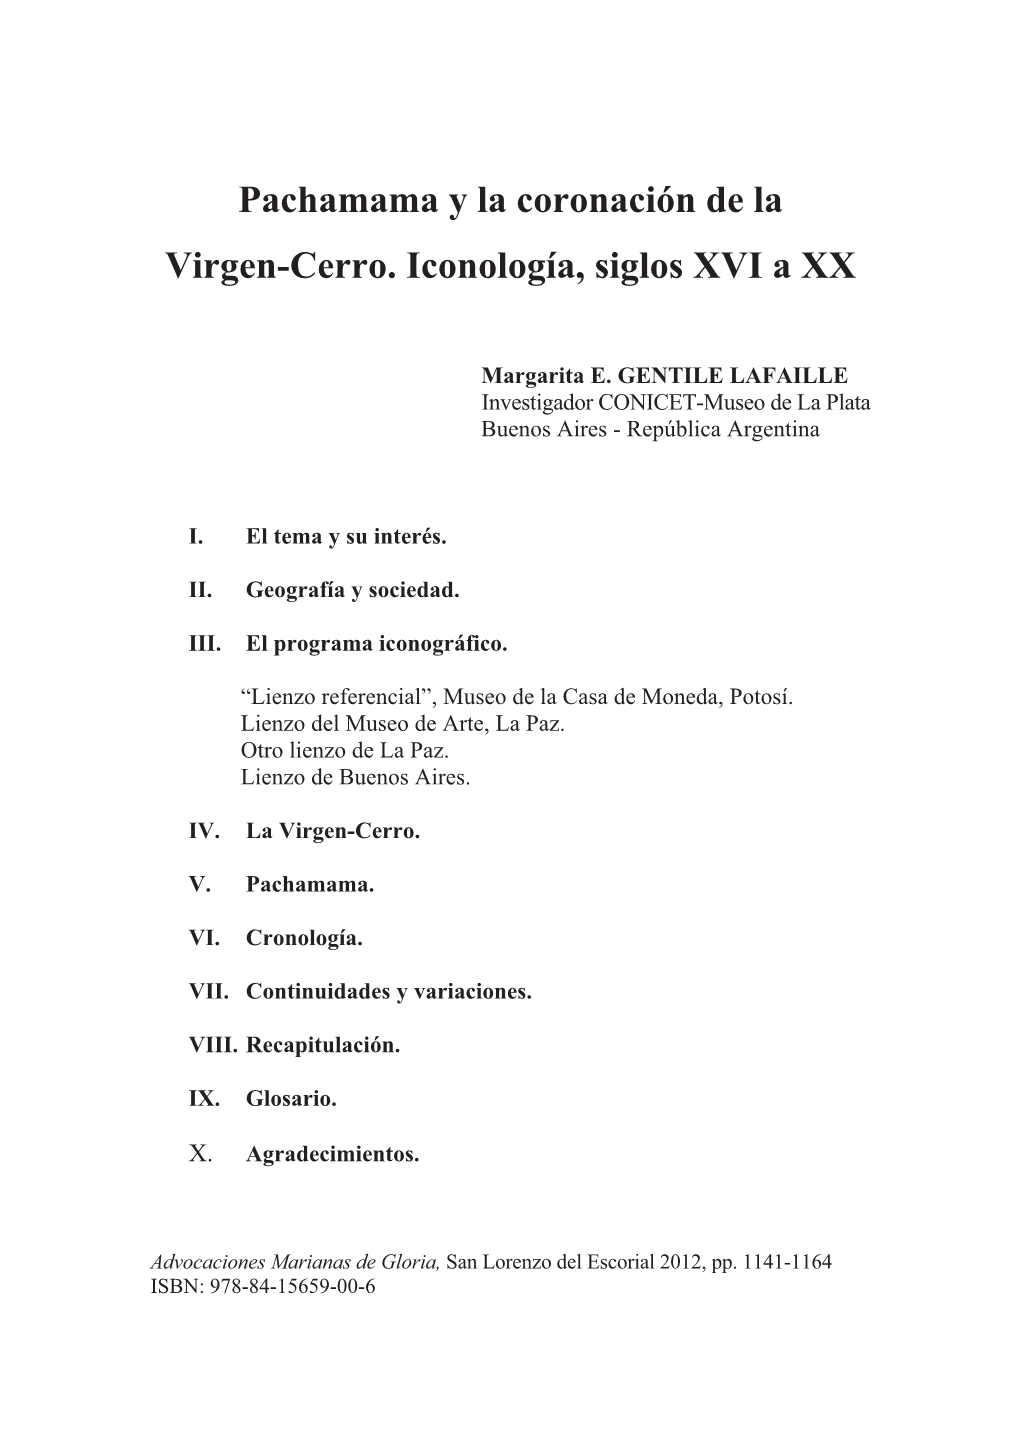 Pachamama Y La Coronación De La Virgen-Cerro. Iconología, Siglos XVI a XX